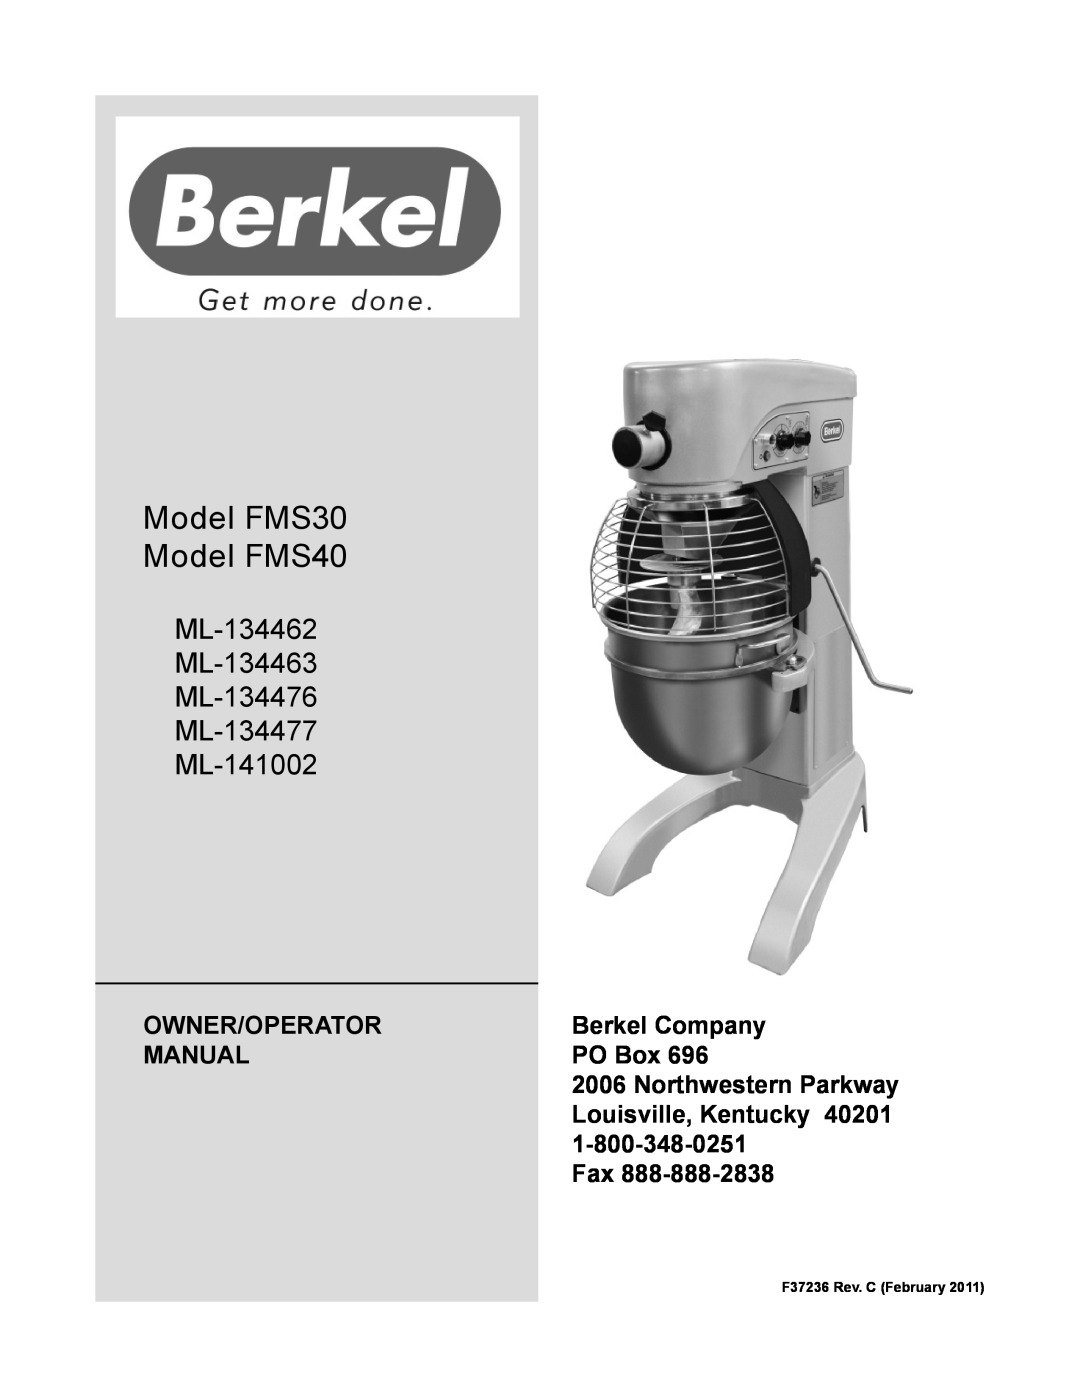 Berkel manual Owner/Operator, Berkel Company, Manual, PO Box, Louisville, Kentucky, Model FMS30 Model FMS40 